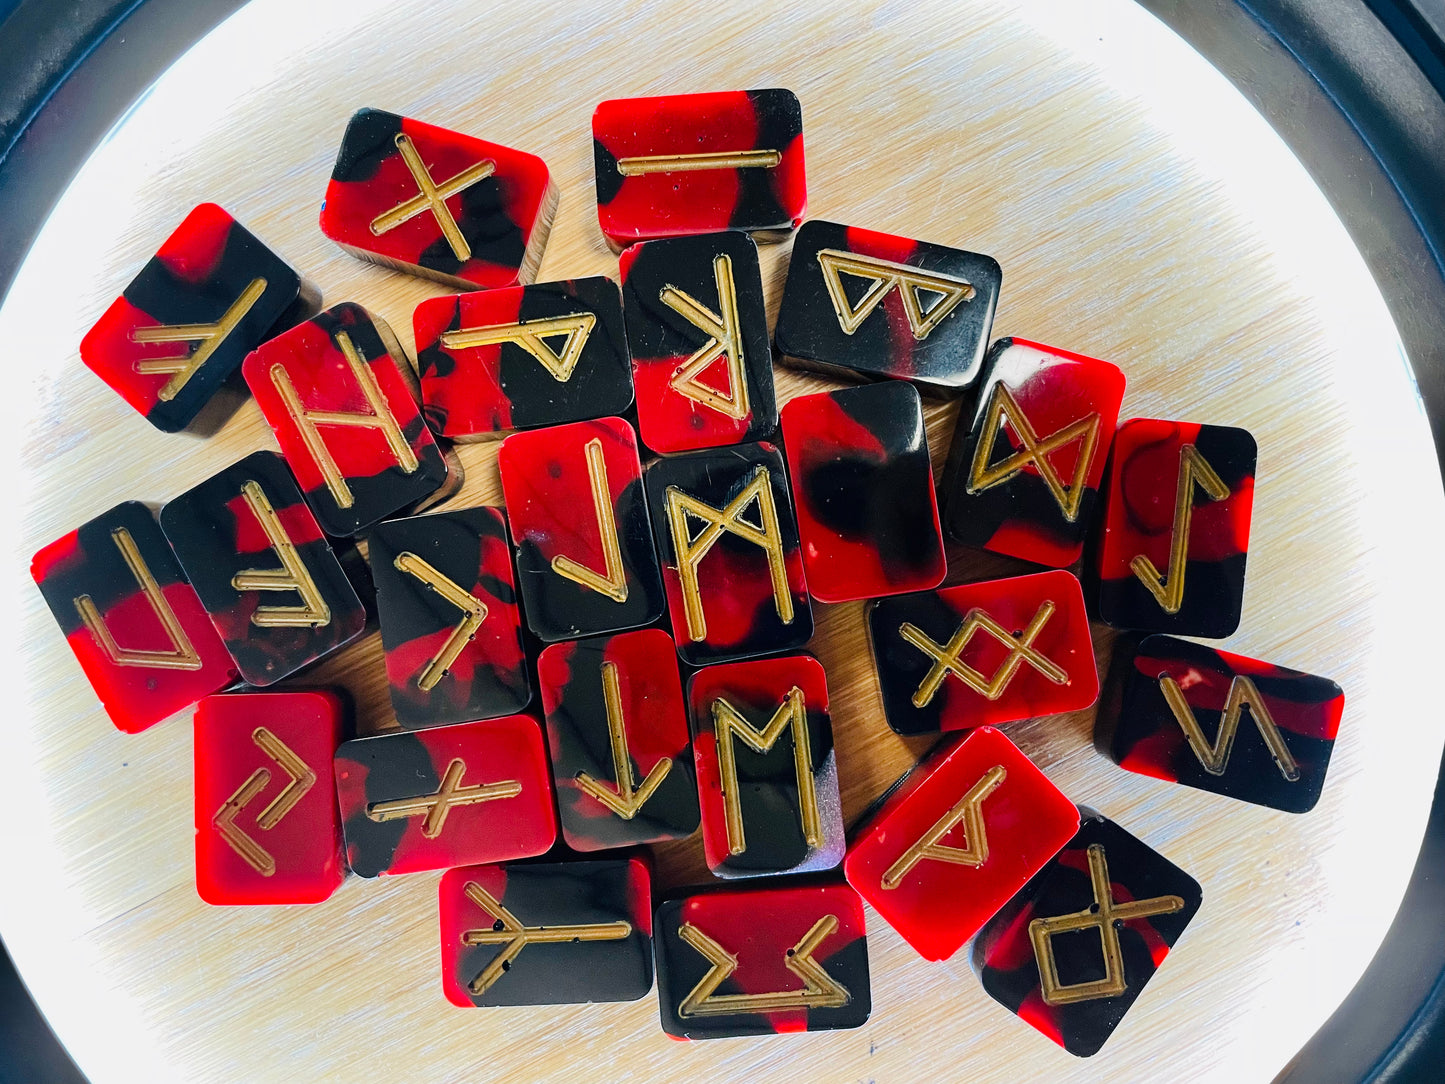 Red & Black Elder Futhark Full Size Resin Rune Set, 25 pc + Bonus Crystal & Bag